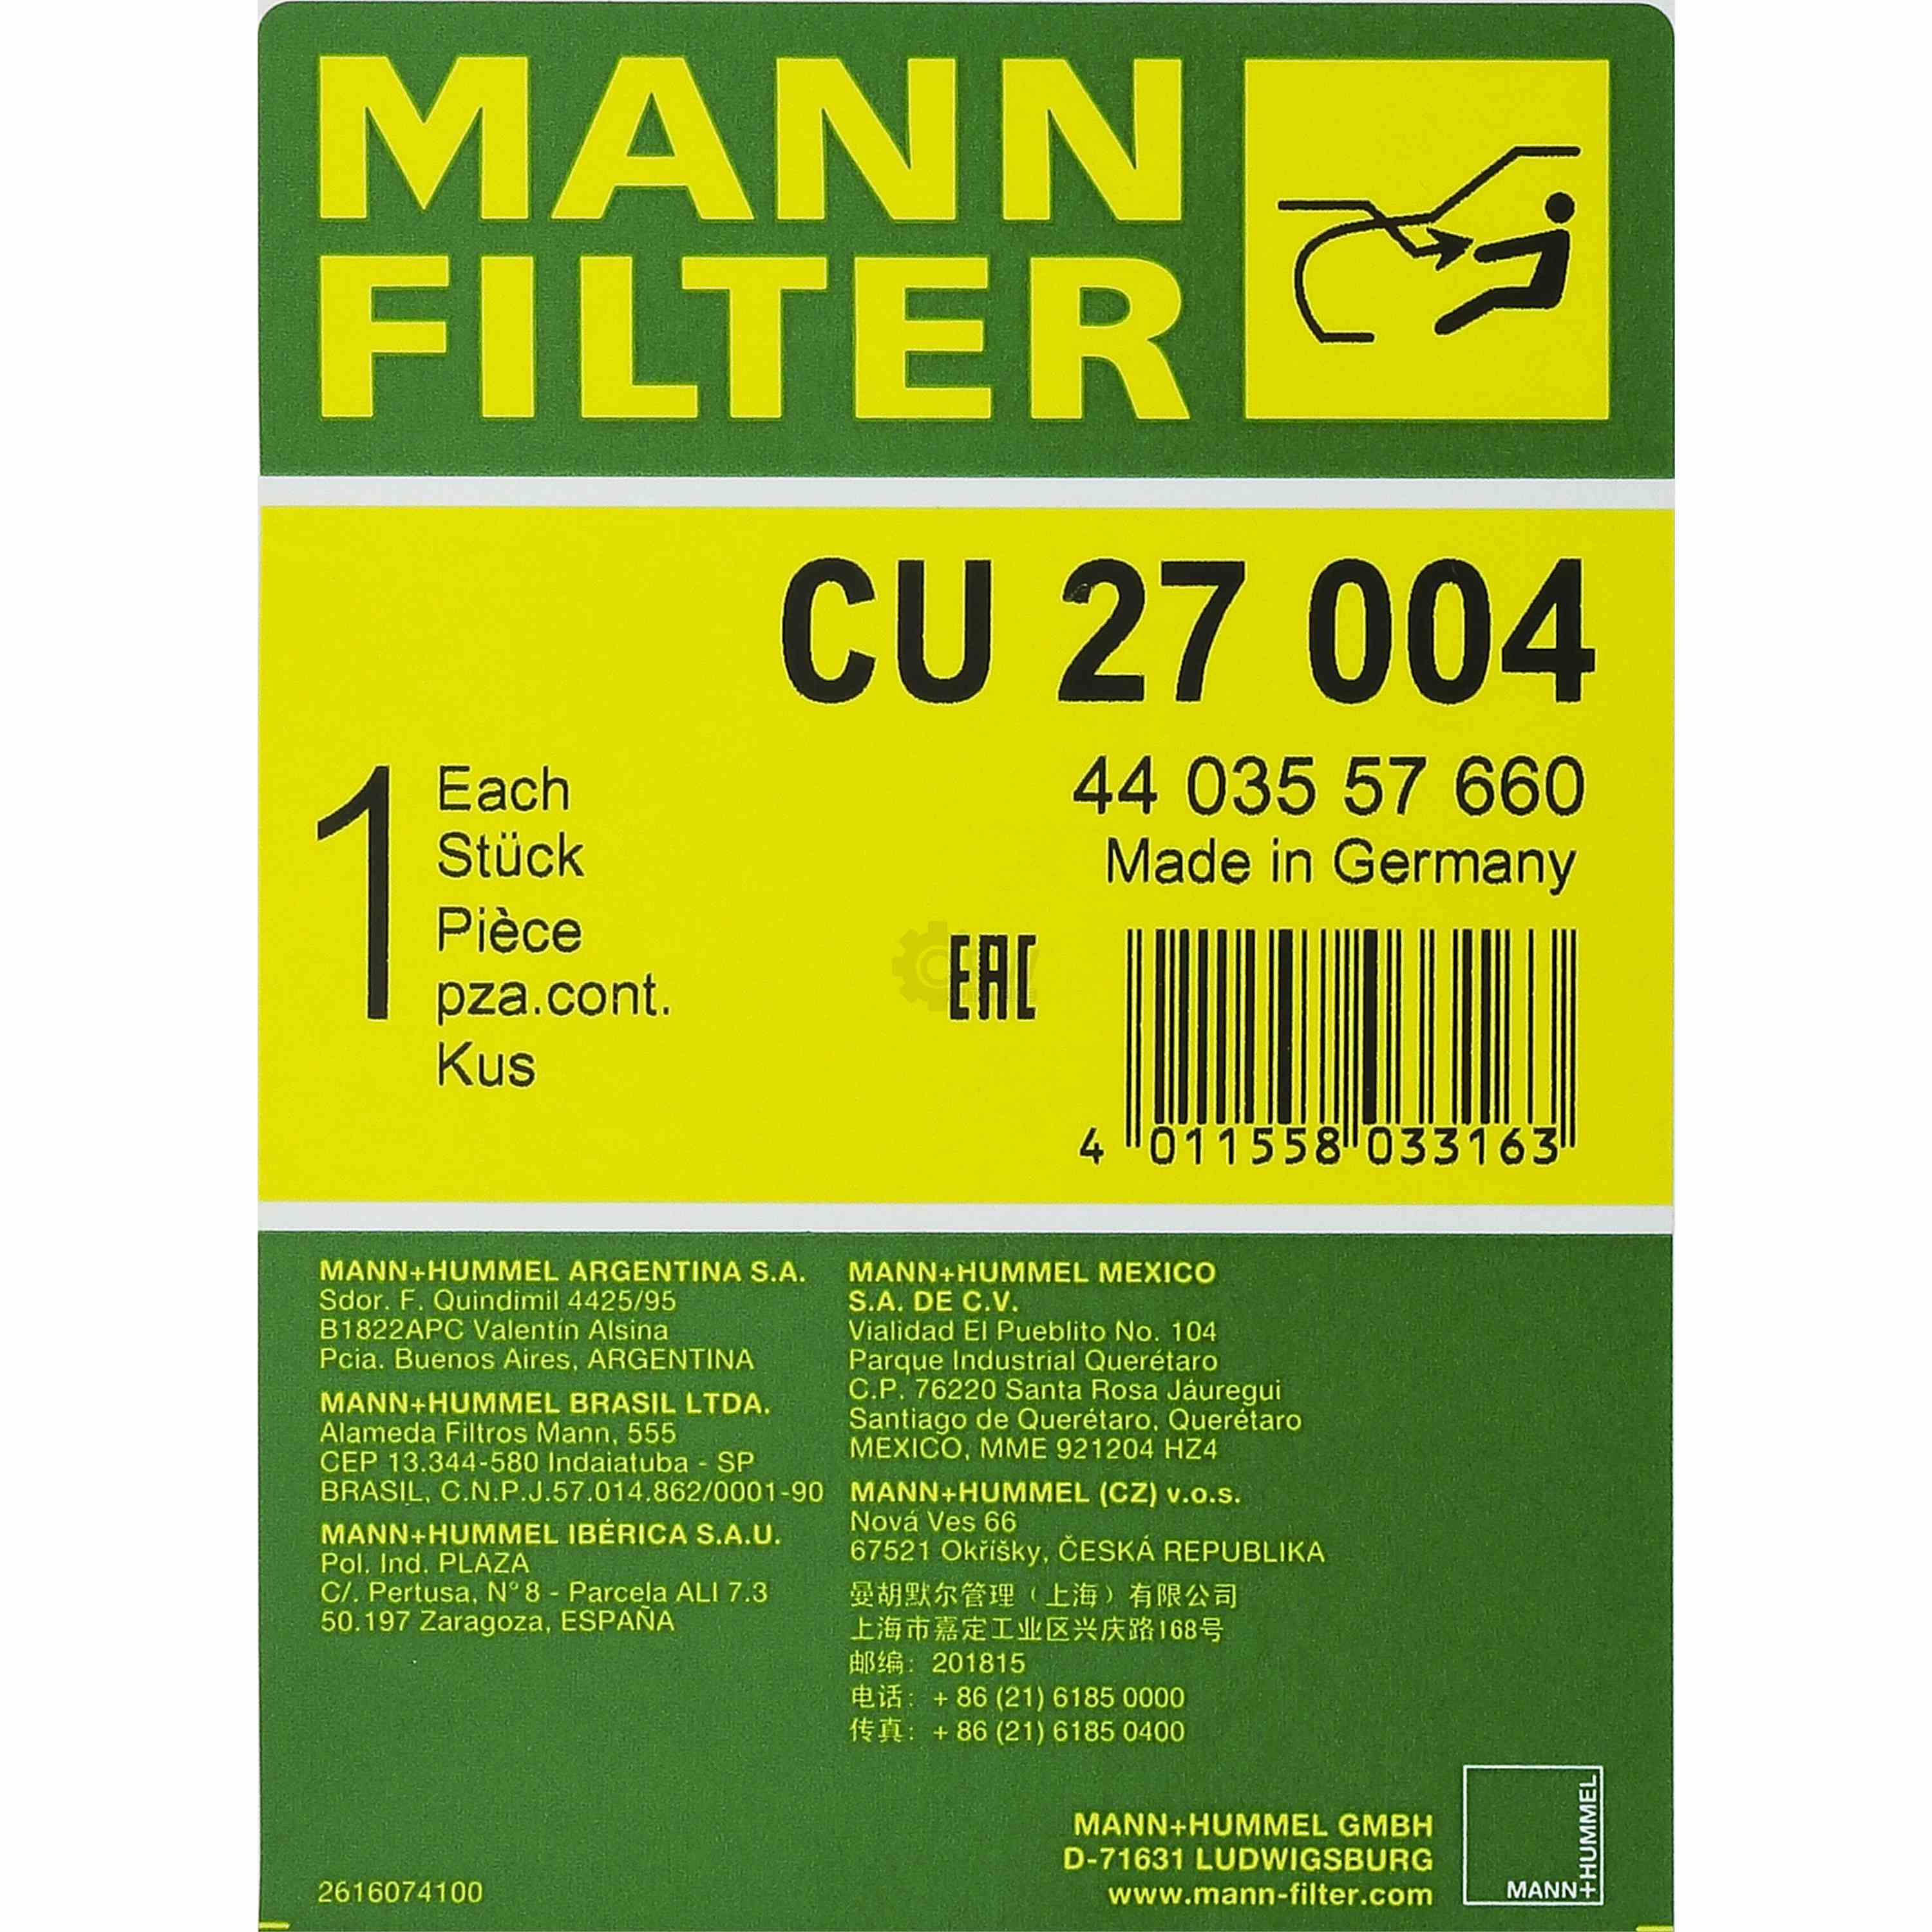 MANN Innenraum Filter CU 27 004